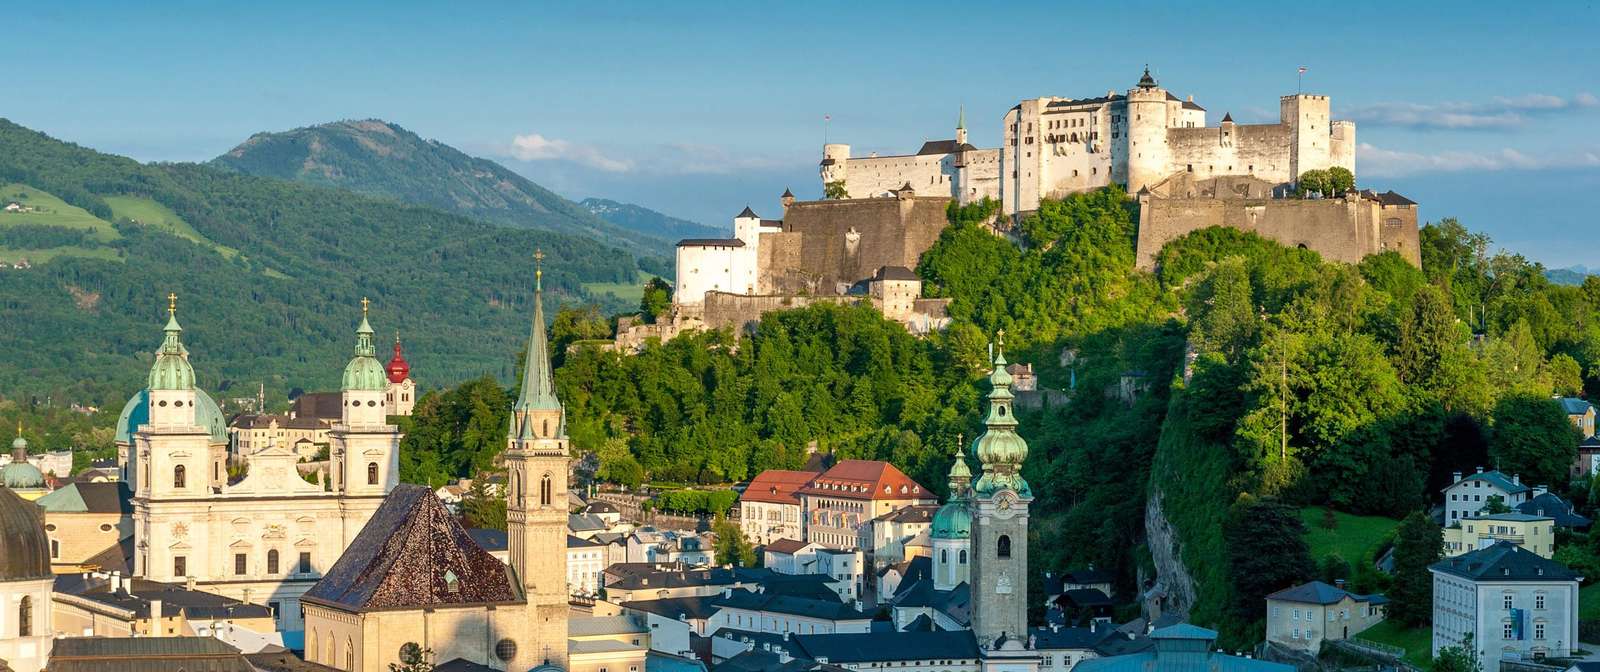 Festung Hohensalzburg ©Tourismus Salzburg